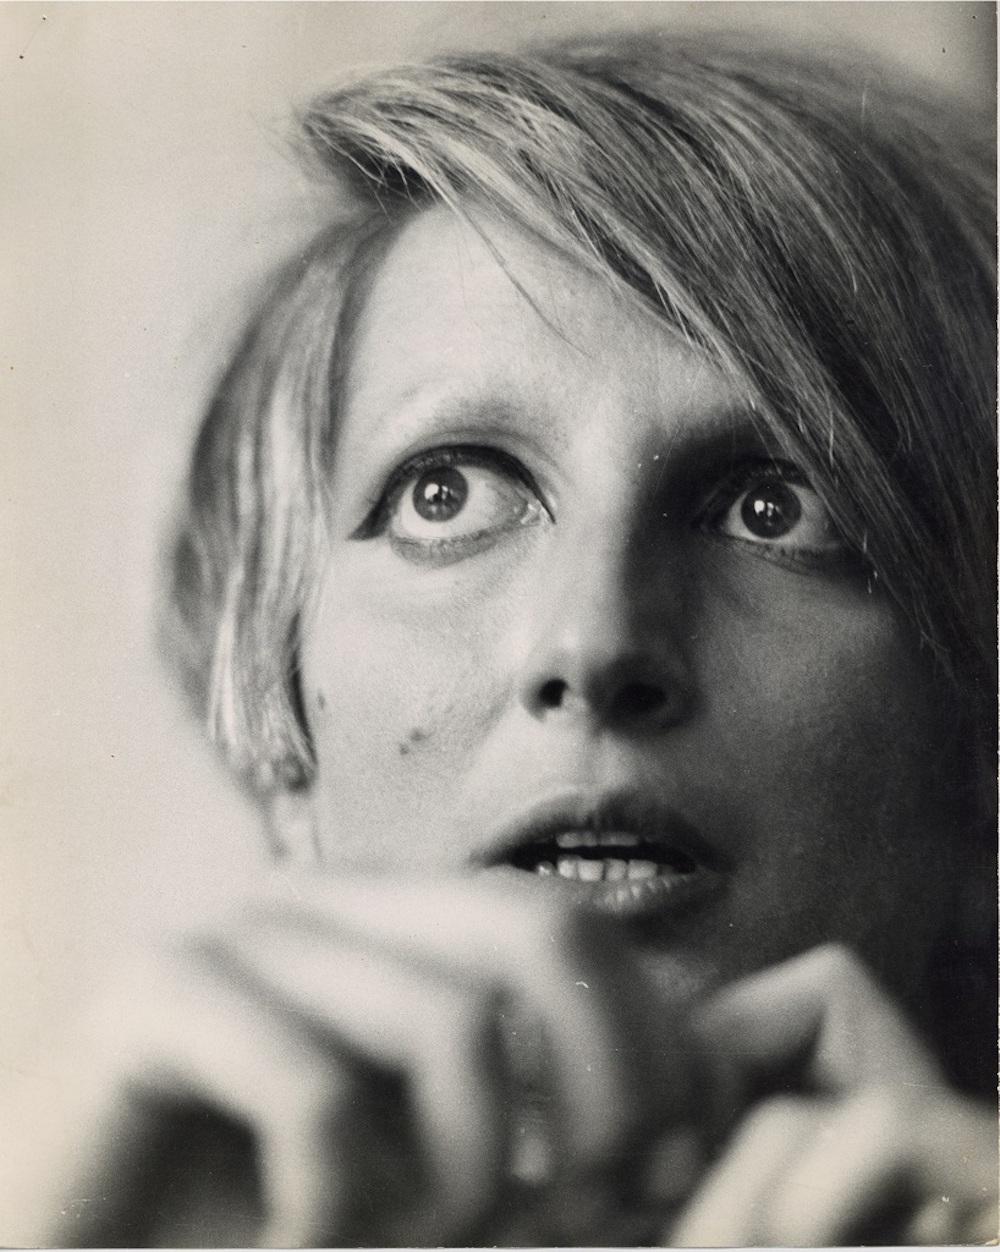 Gianni Piccione Portrait Photograph - Portrait of Mina - Original Vintage Photograph - 1960s